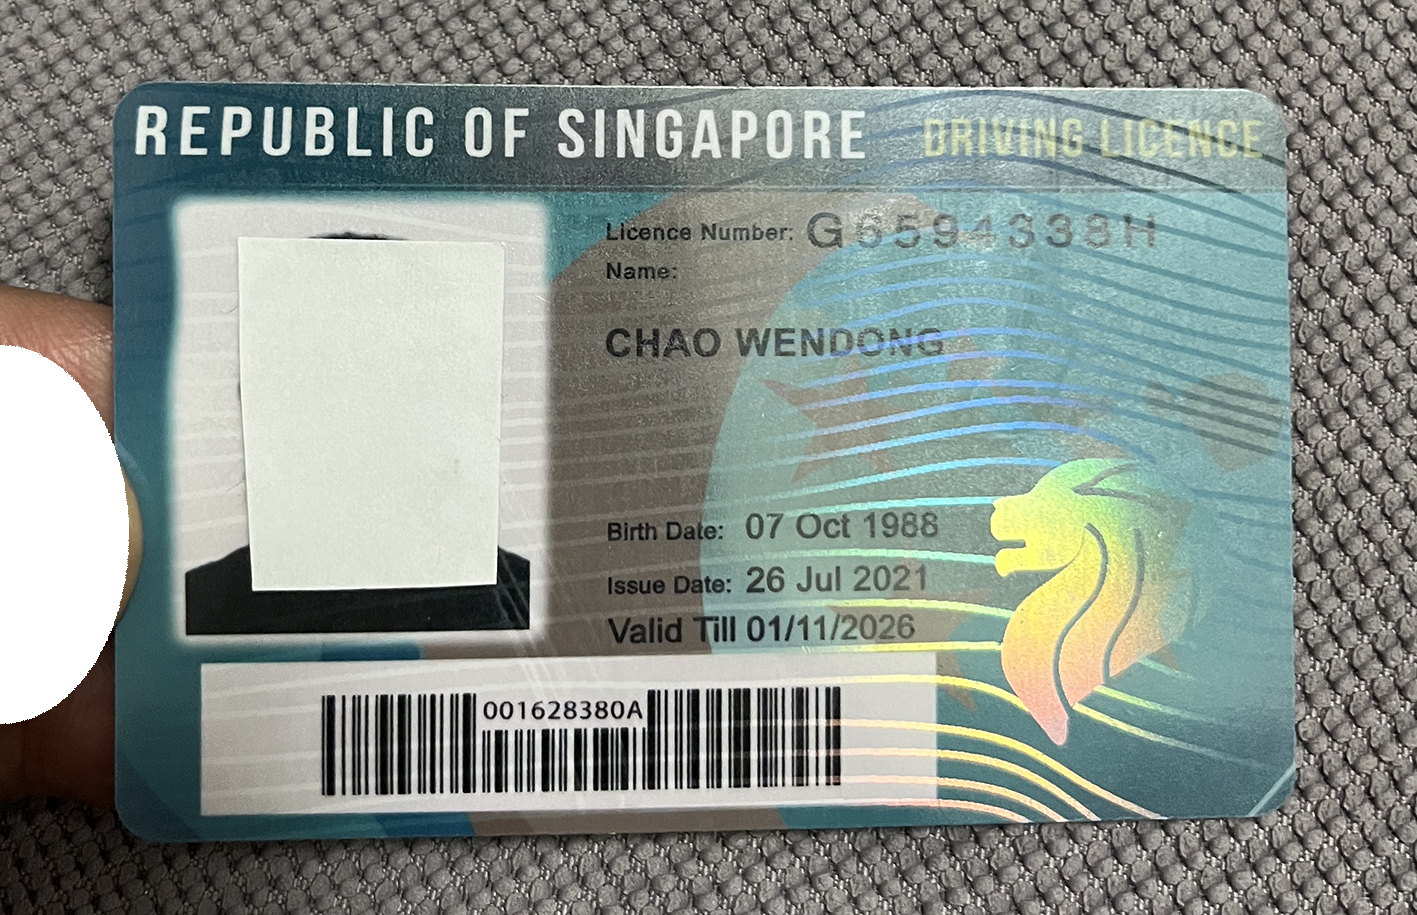 微信图片_20230515003201.jpg 新加坡驾驶证镭射水印展示 镭射水印卡